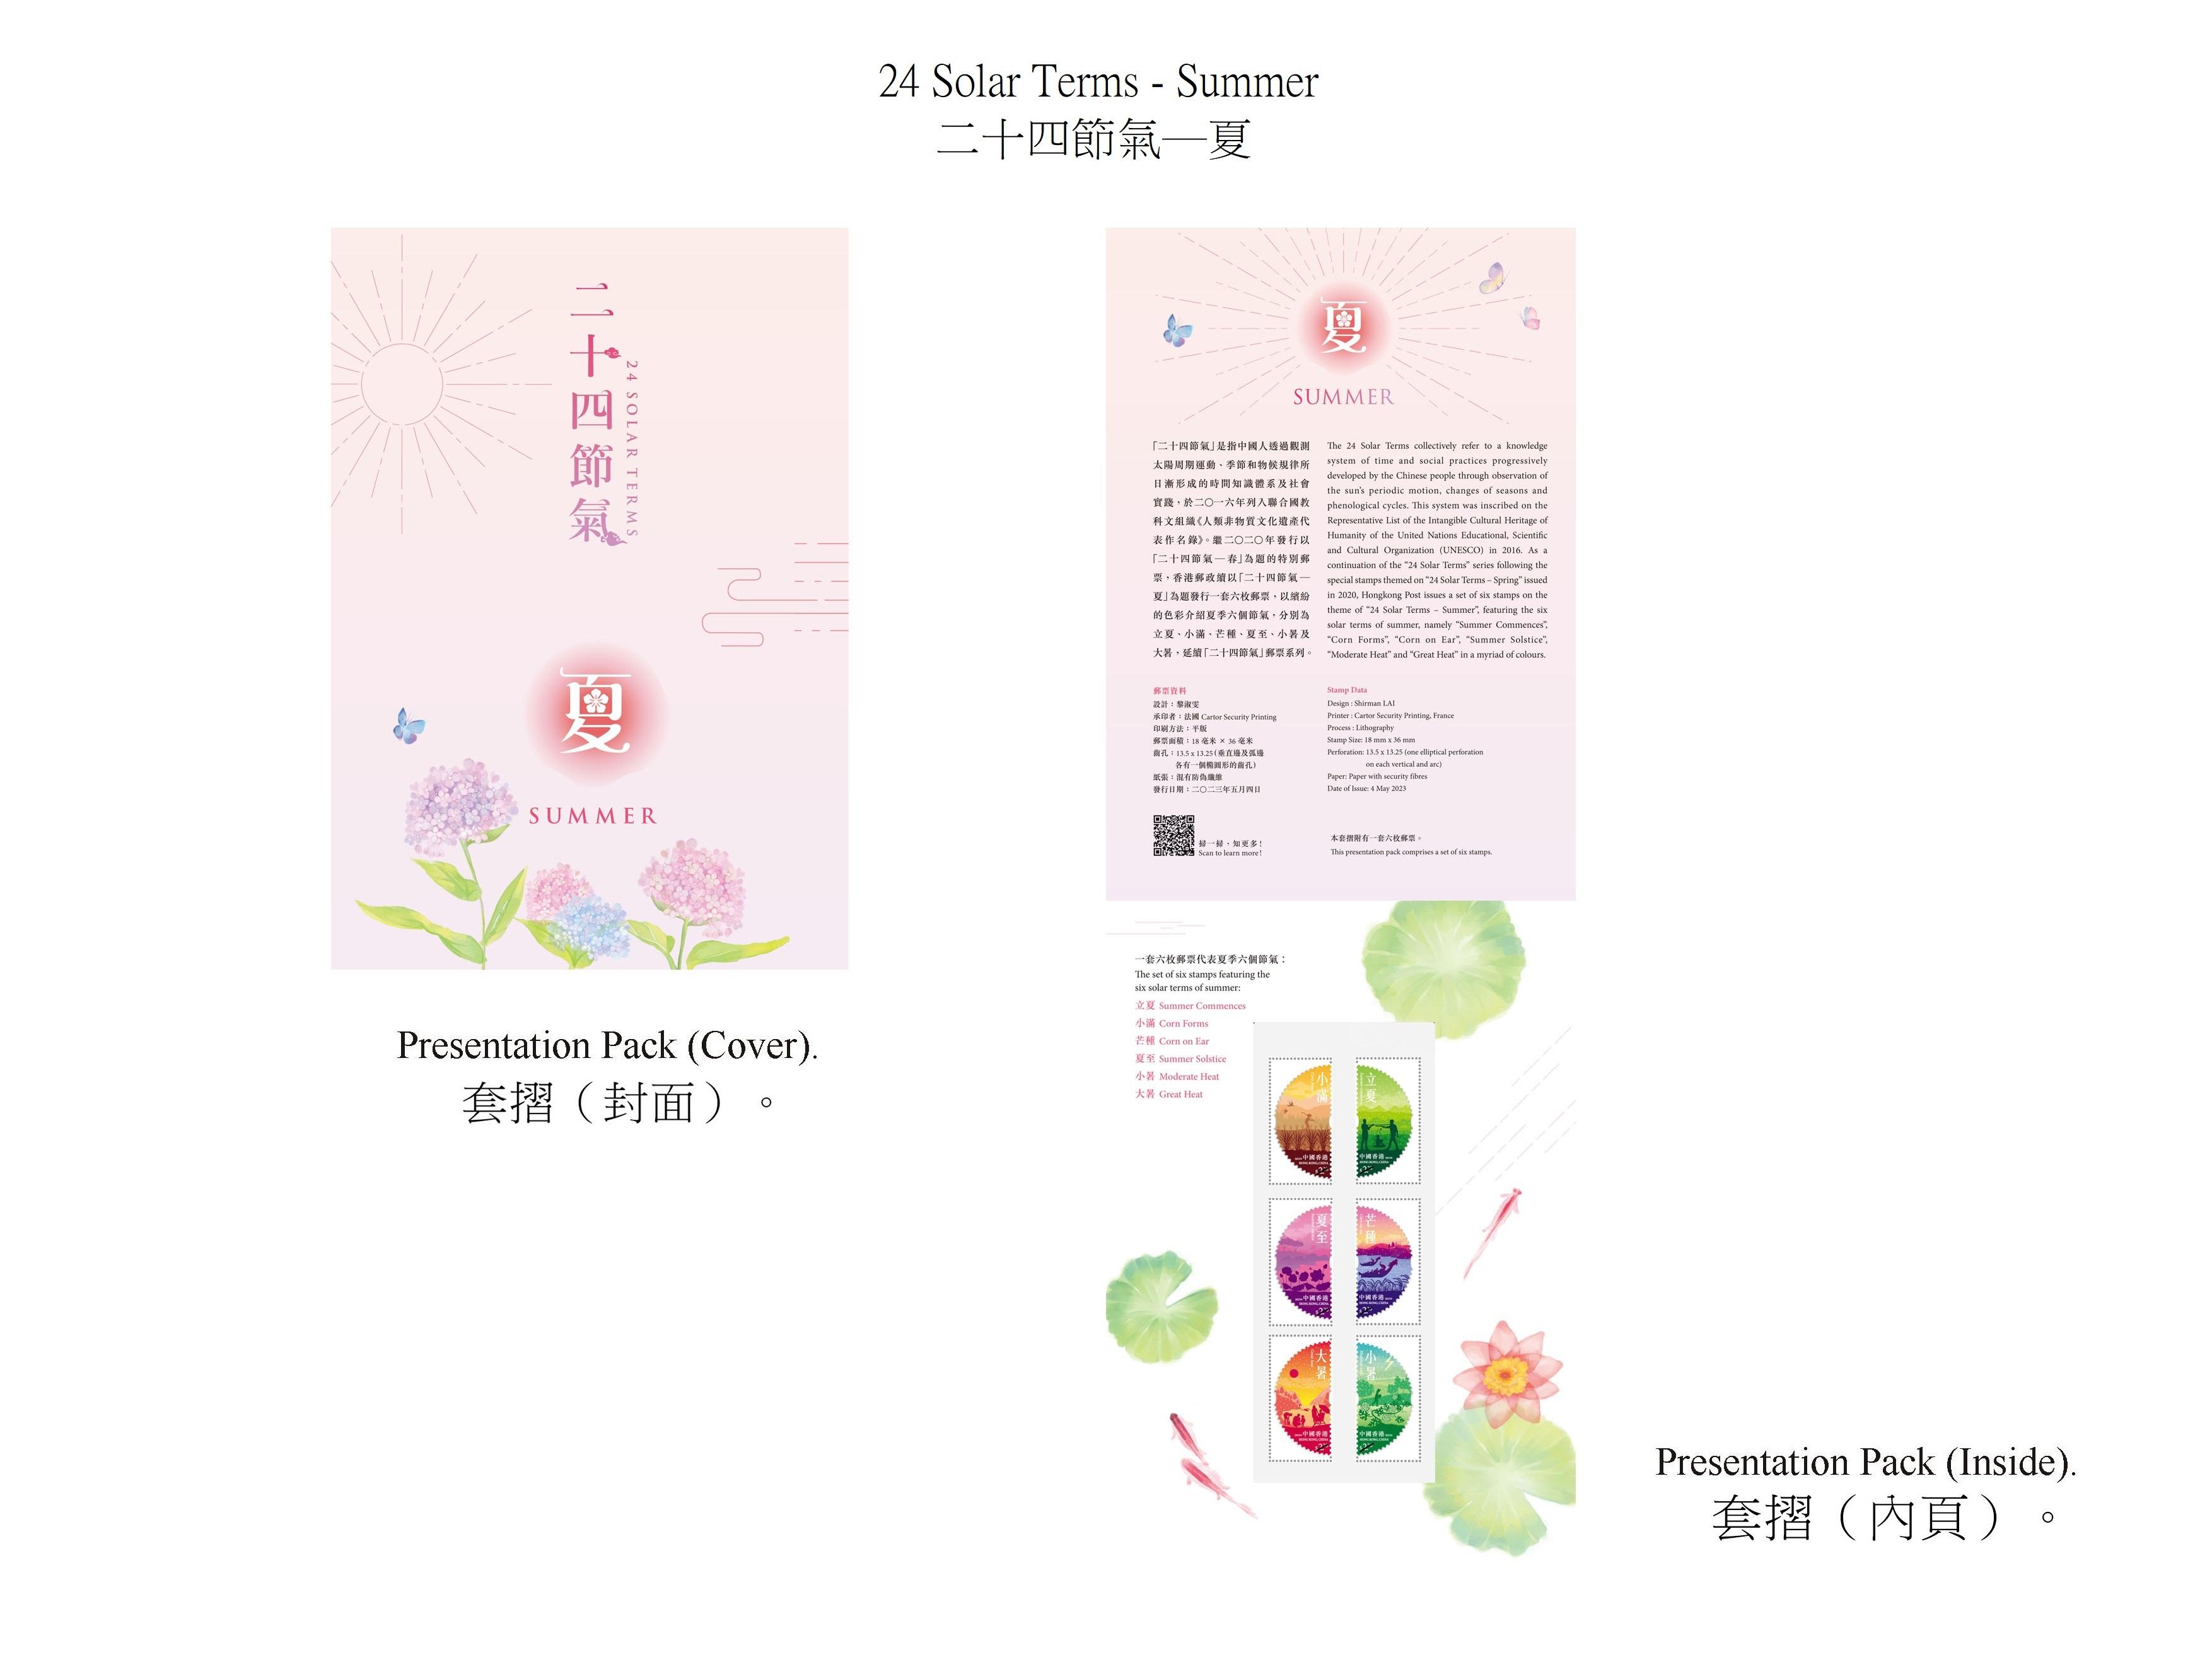 香港邮政五月四日（星期四）发行以「二十四节气──夏」为题的特别邮票及相关集邮品。图示套折。